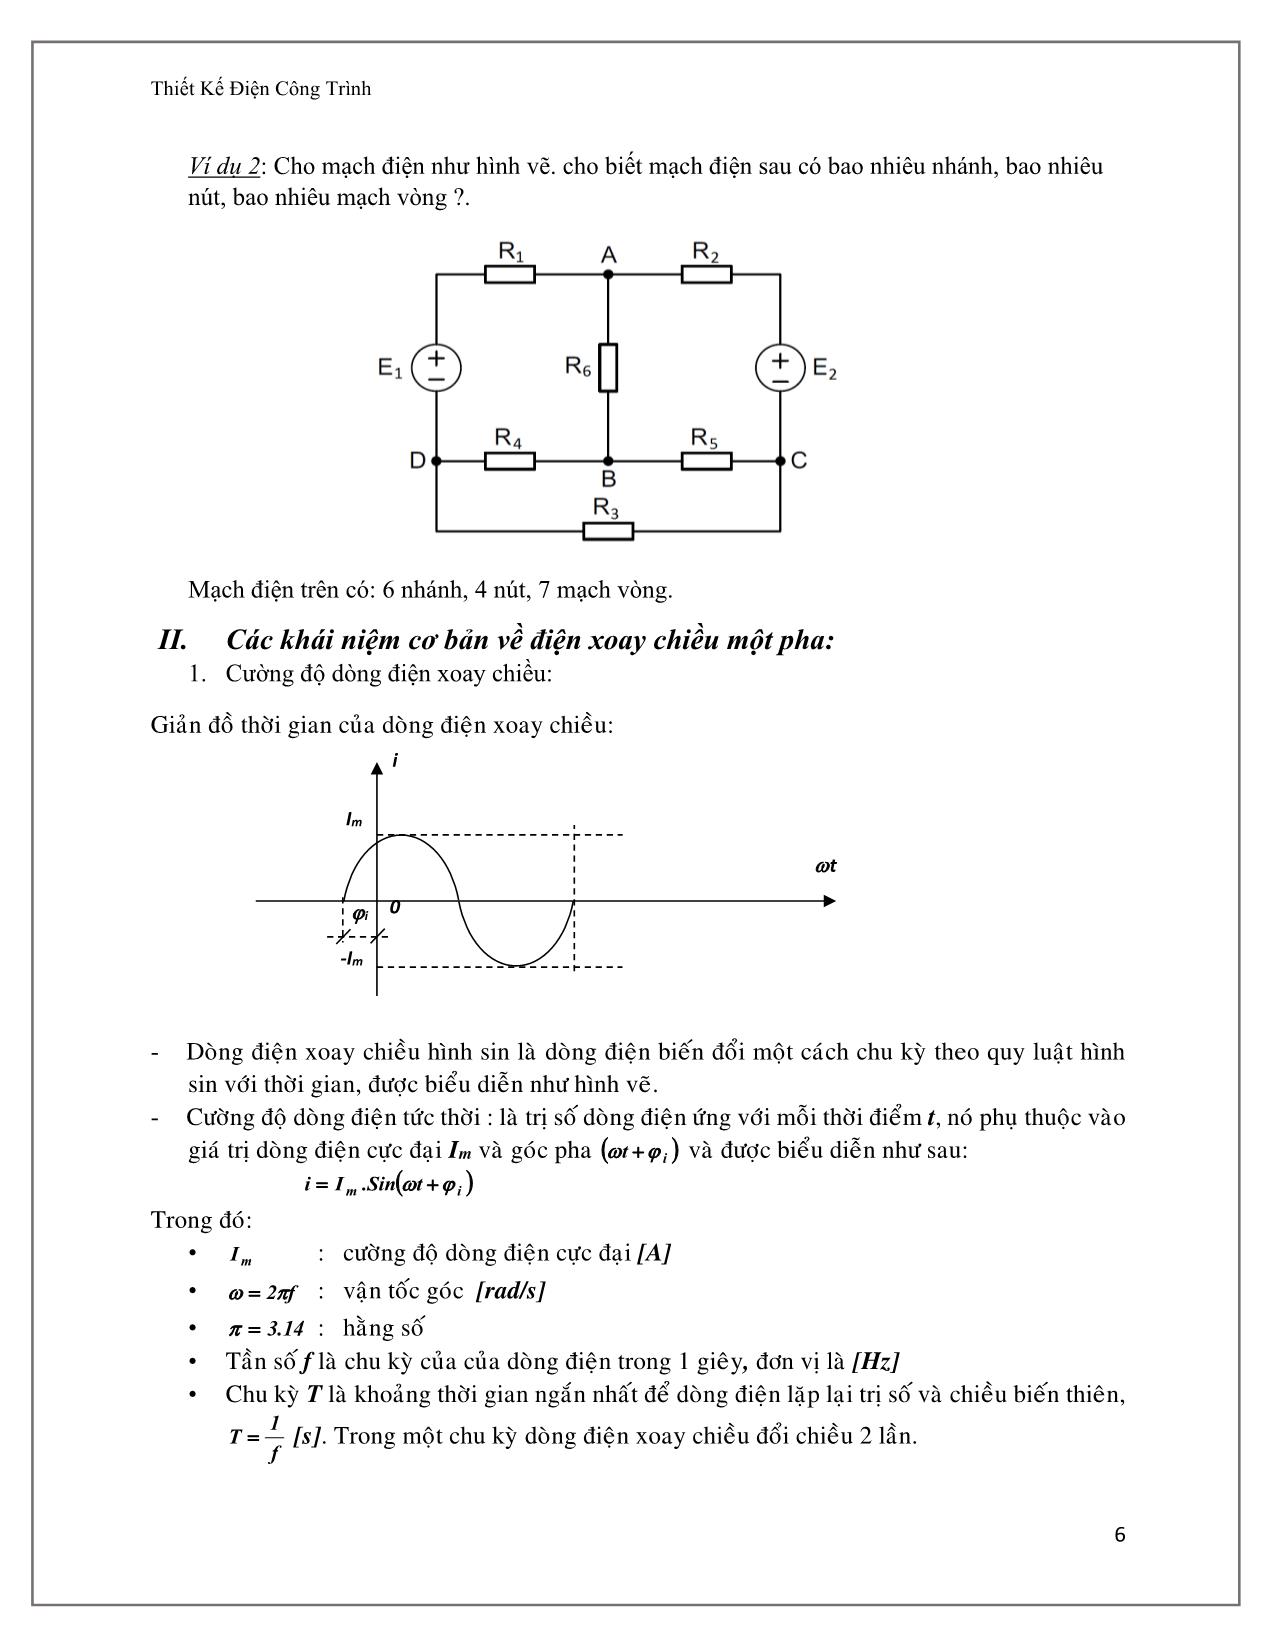 Giáo trình Thiết kế điện công trình - Chương 1: Nguồn điện trong công trình trang 6